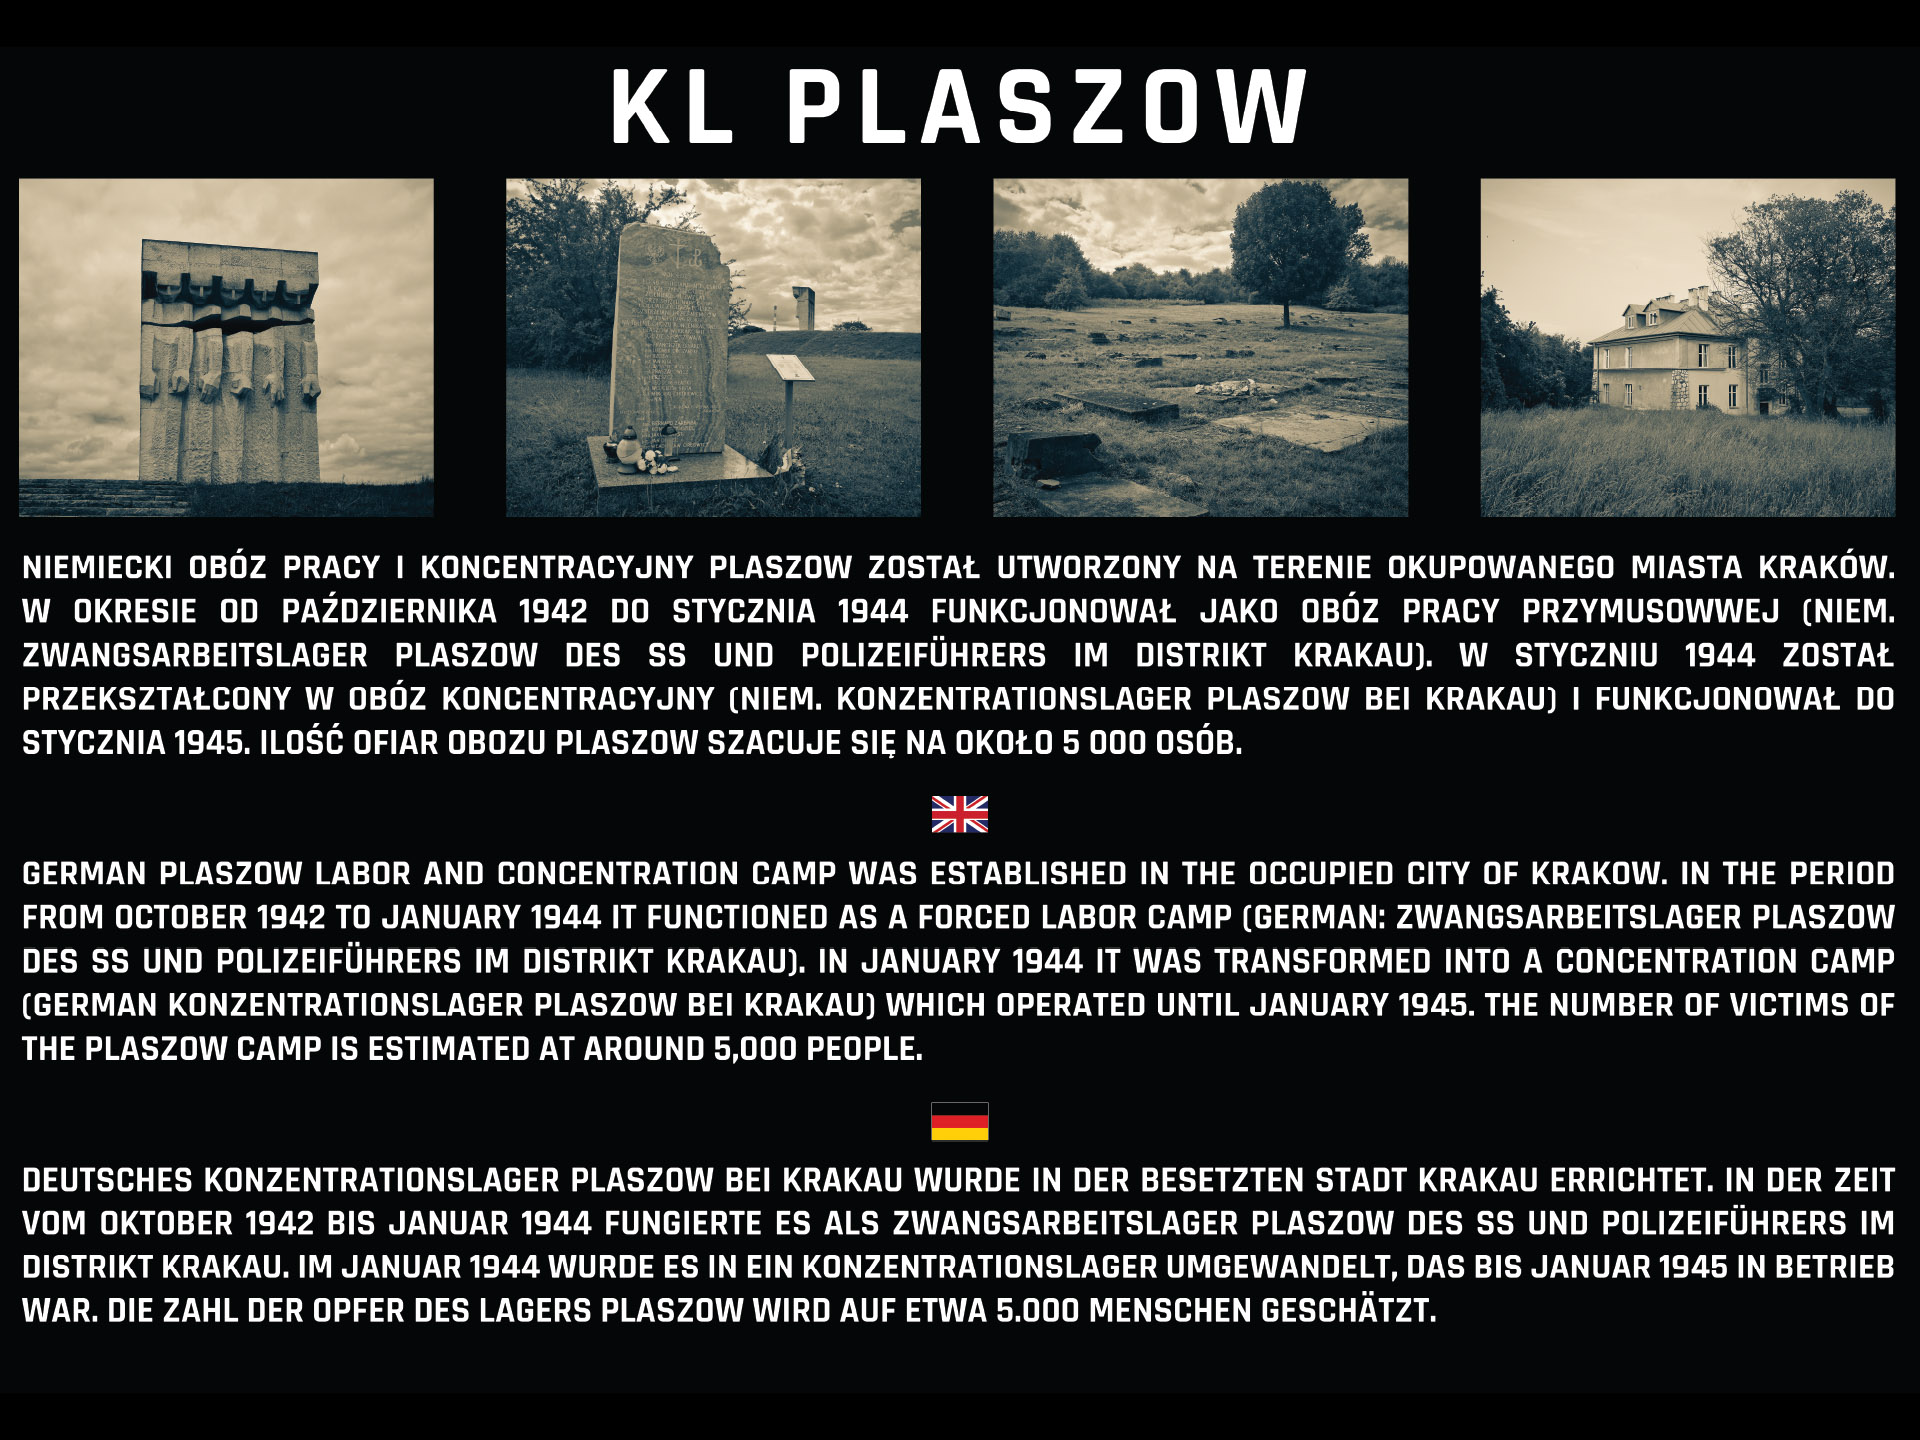 KL Plaszow